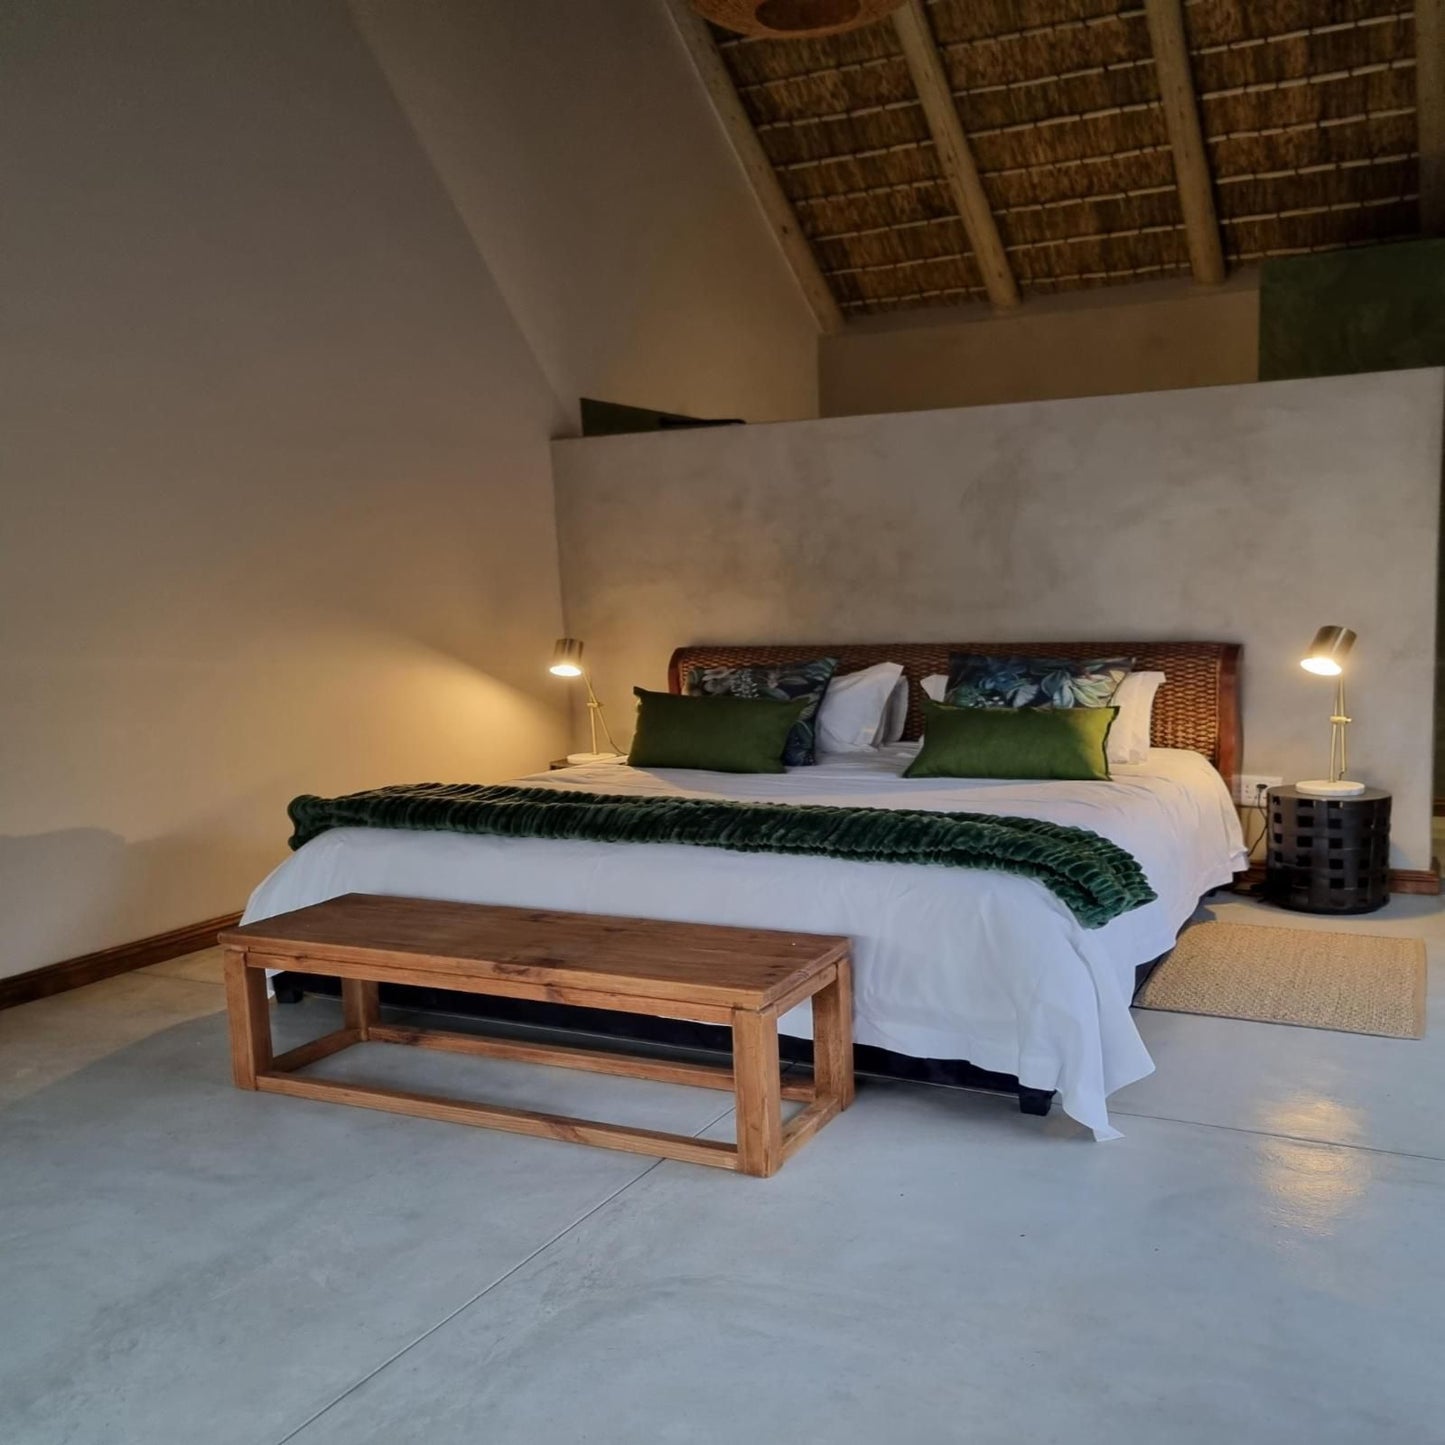 Umndeni Africa Hoedspruit Limpopo Province South Africa Bedroom